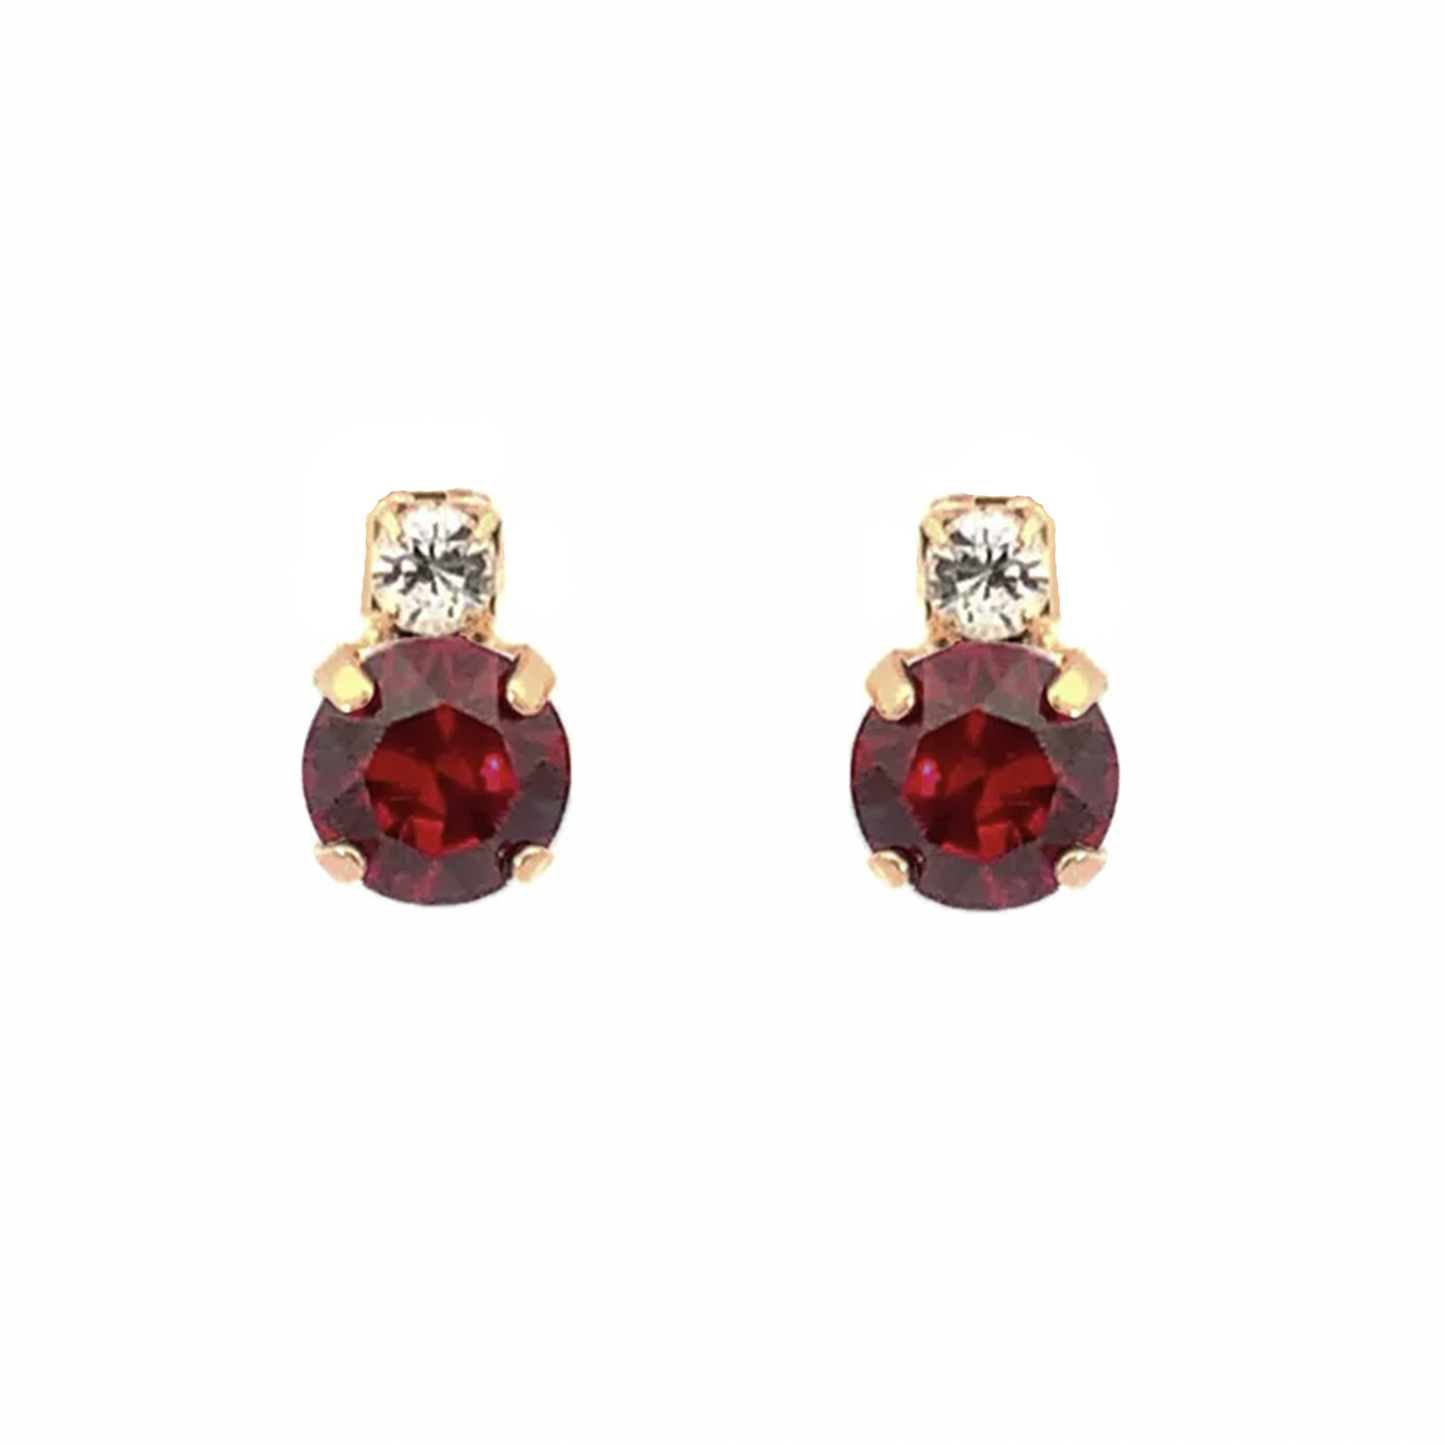 Garnet stud earrings gold